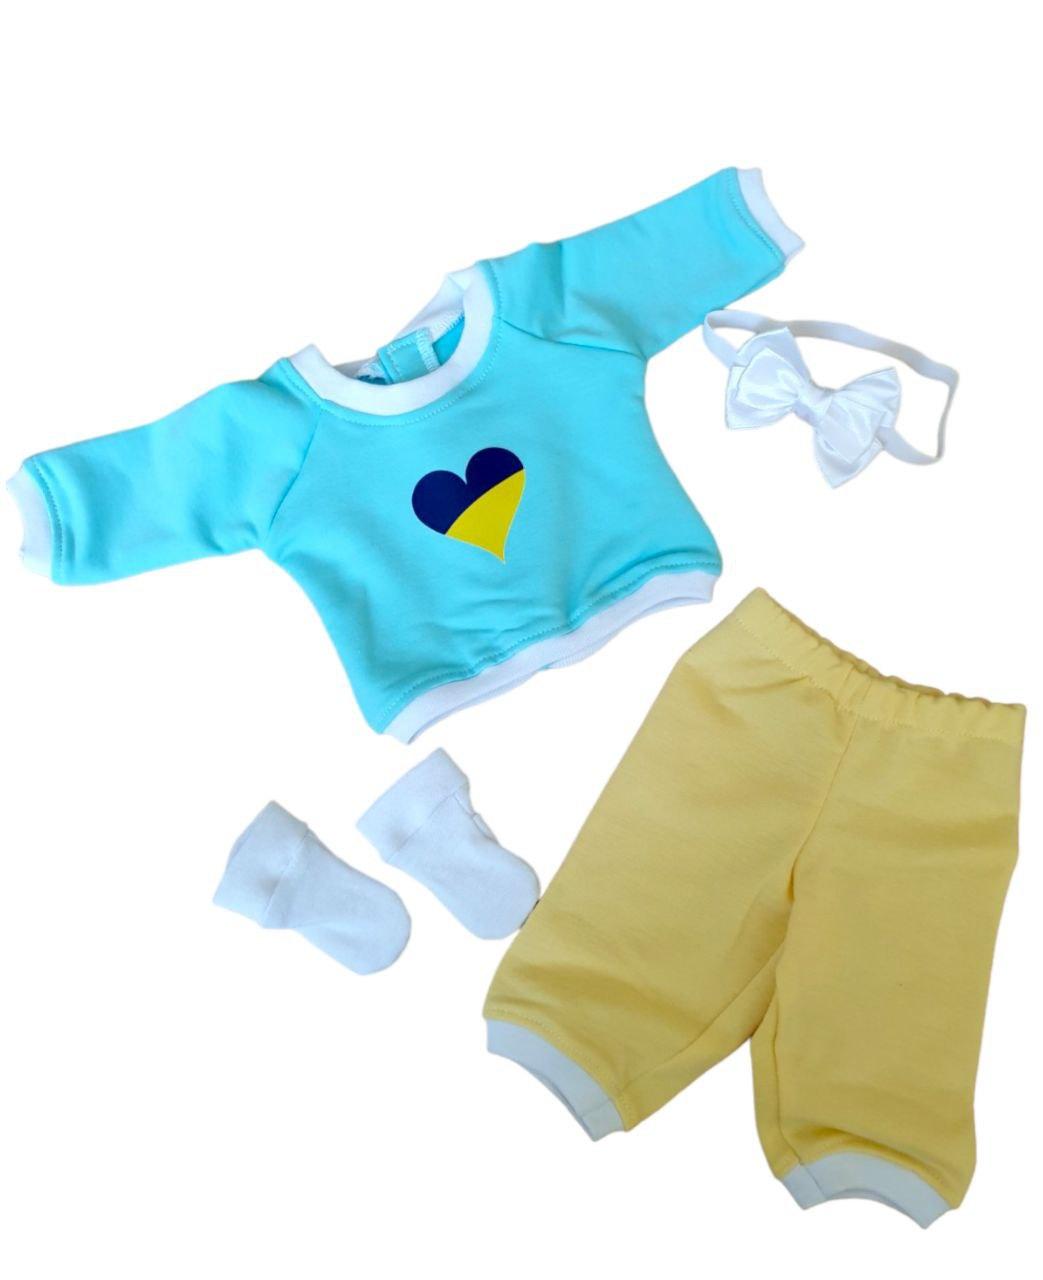 Набір одяг для ляльки Бебі Борн / Baby Born 40 - 43 см кофточка штанці шкарпетки пов'язка жовто-блакитний 13